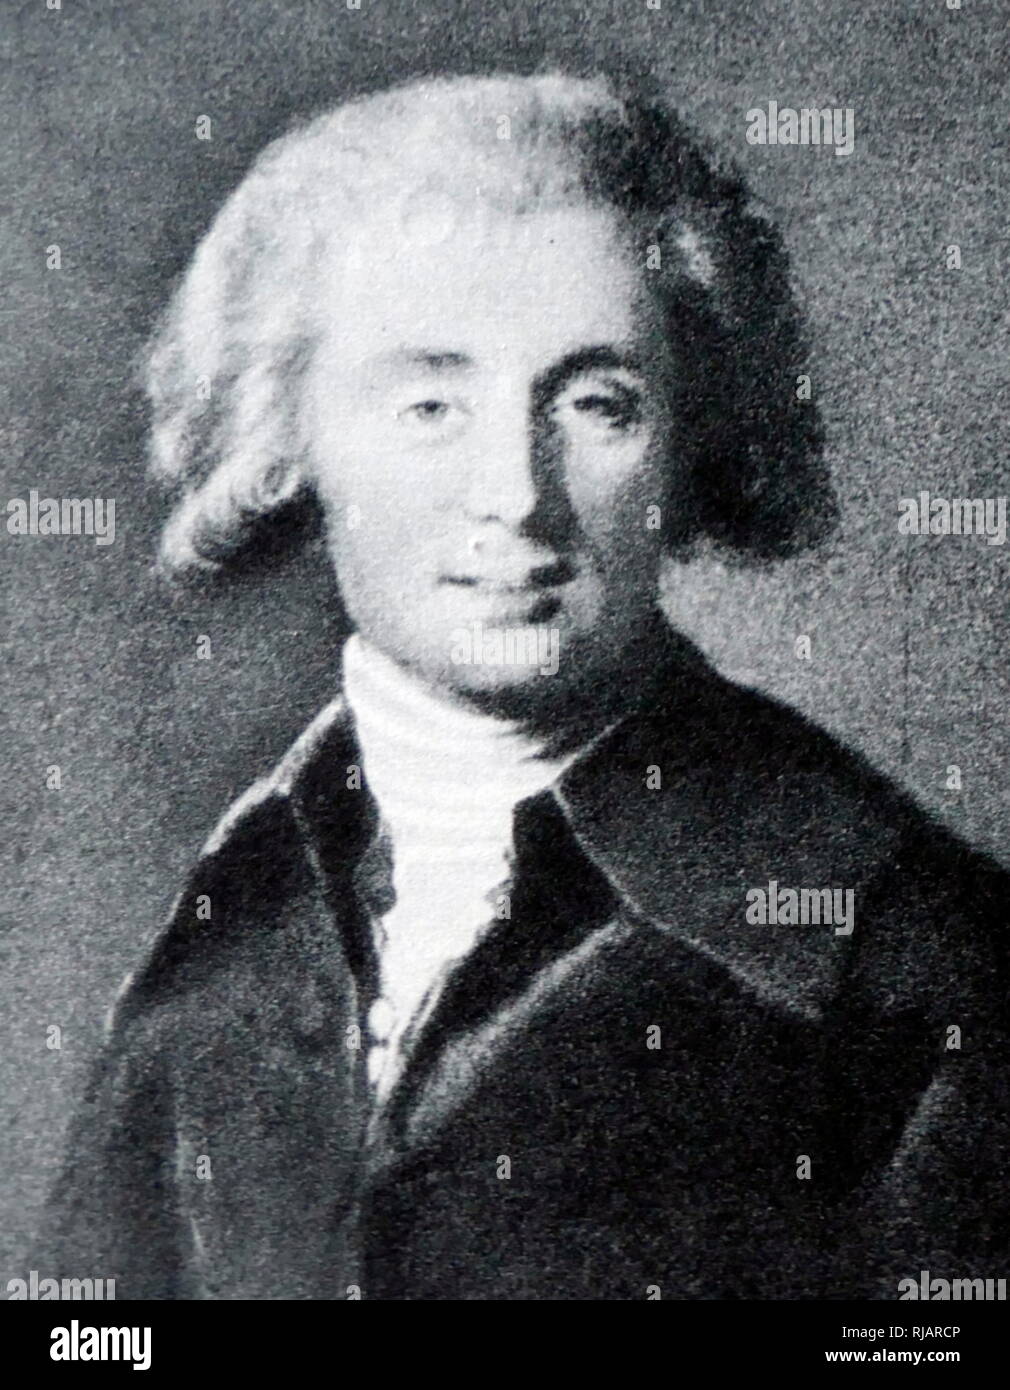 Porträt von Vigee-Lebrun Spiegel, André Ernest Modeste Grétry (1741-1813), Komponist aus dem Fürstbistum Lüttich (heute Belgien), die von 1767 an in Frankreich gearbeitet und nahm die französische Staatsbürgerschaft. Er ist berühmt für seine Opern comiques. Stockfoto